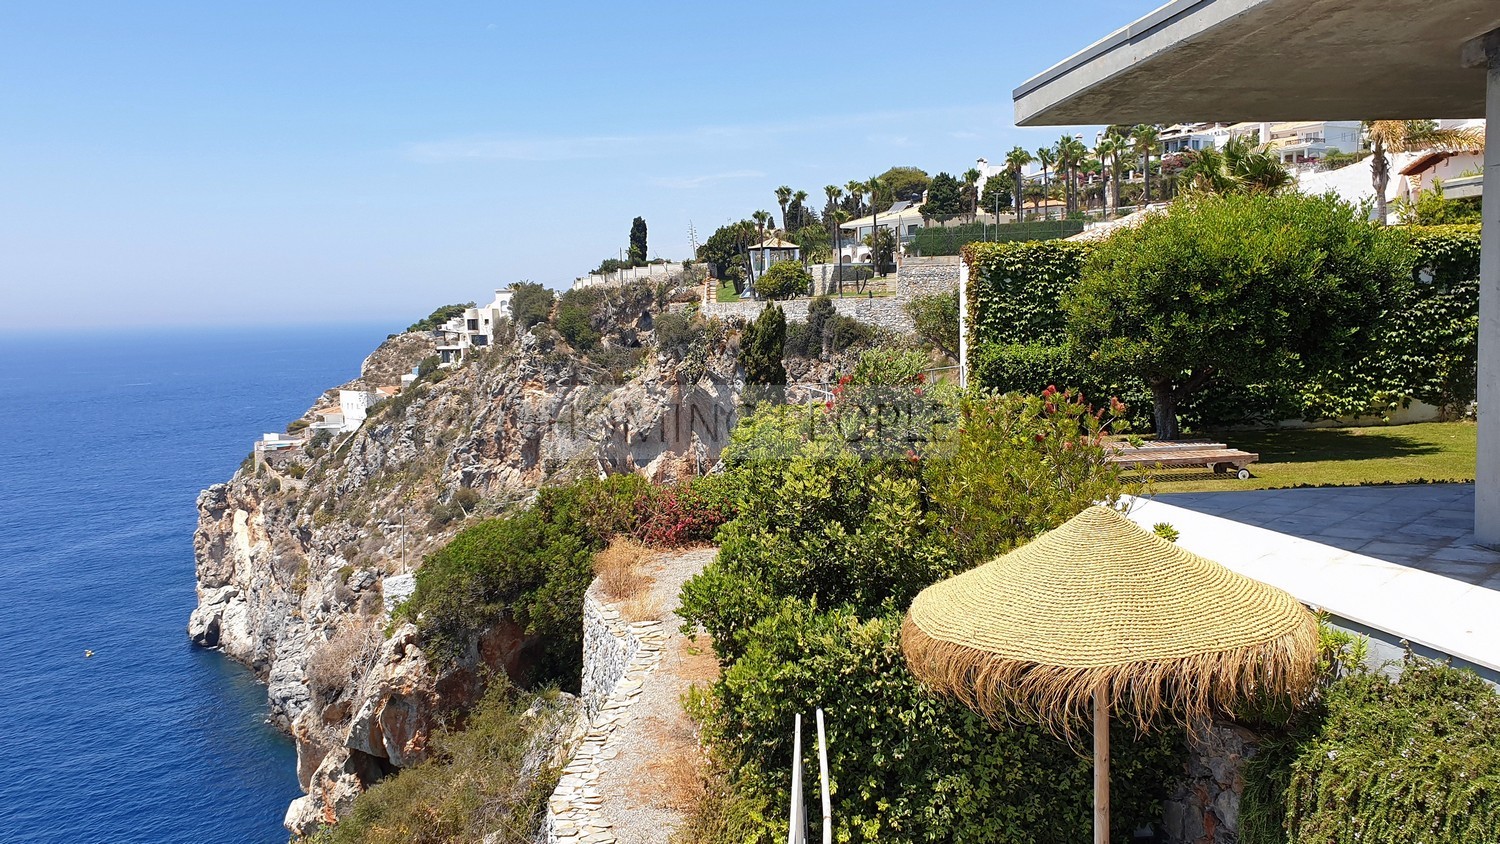 Preciosa villa de diseño moderno en un acantilado sobre el mar